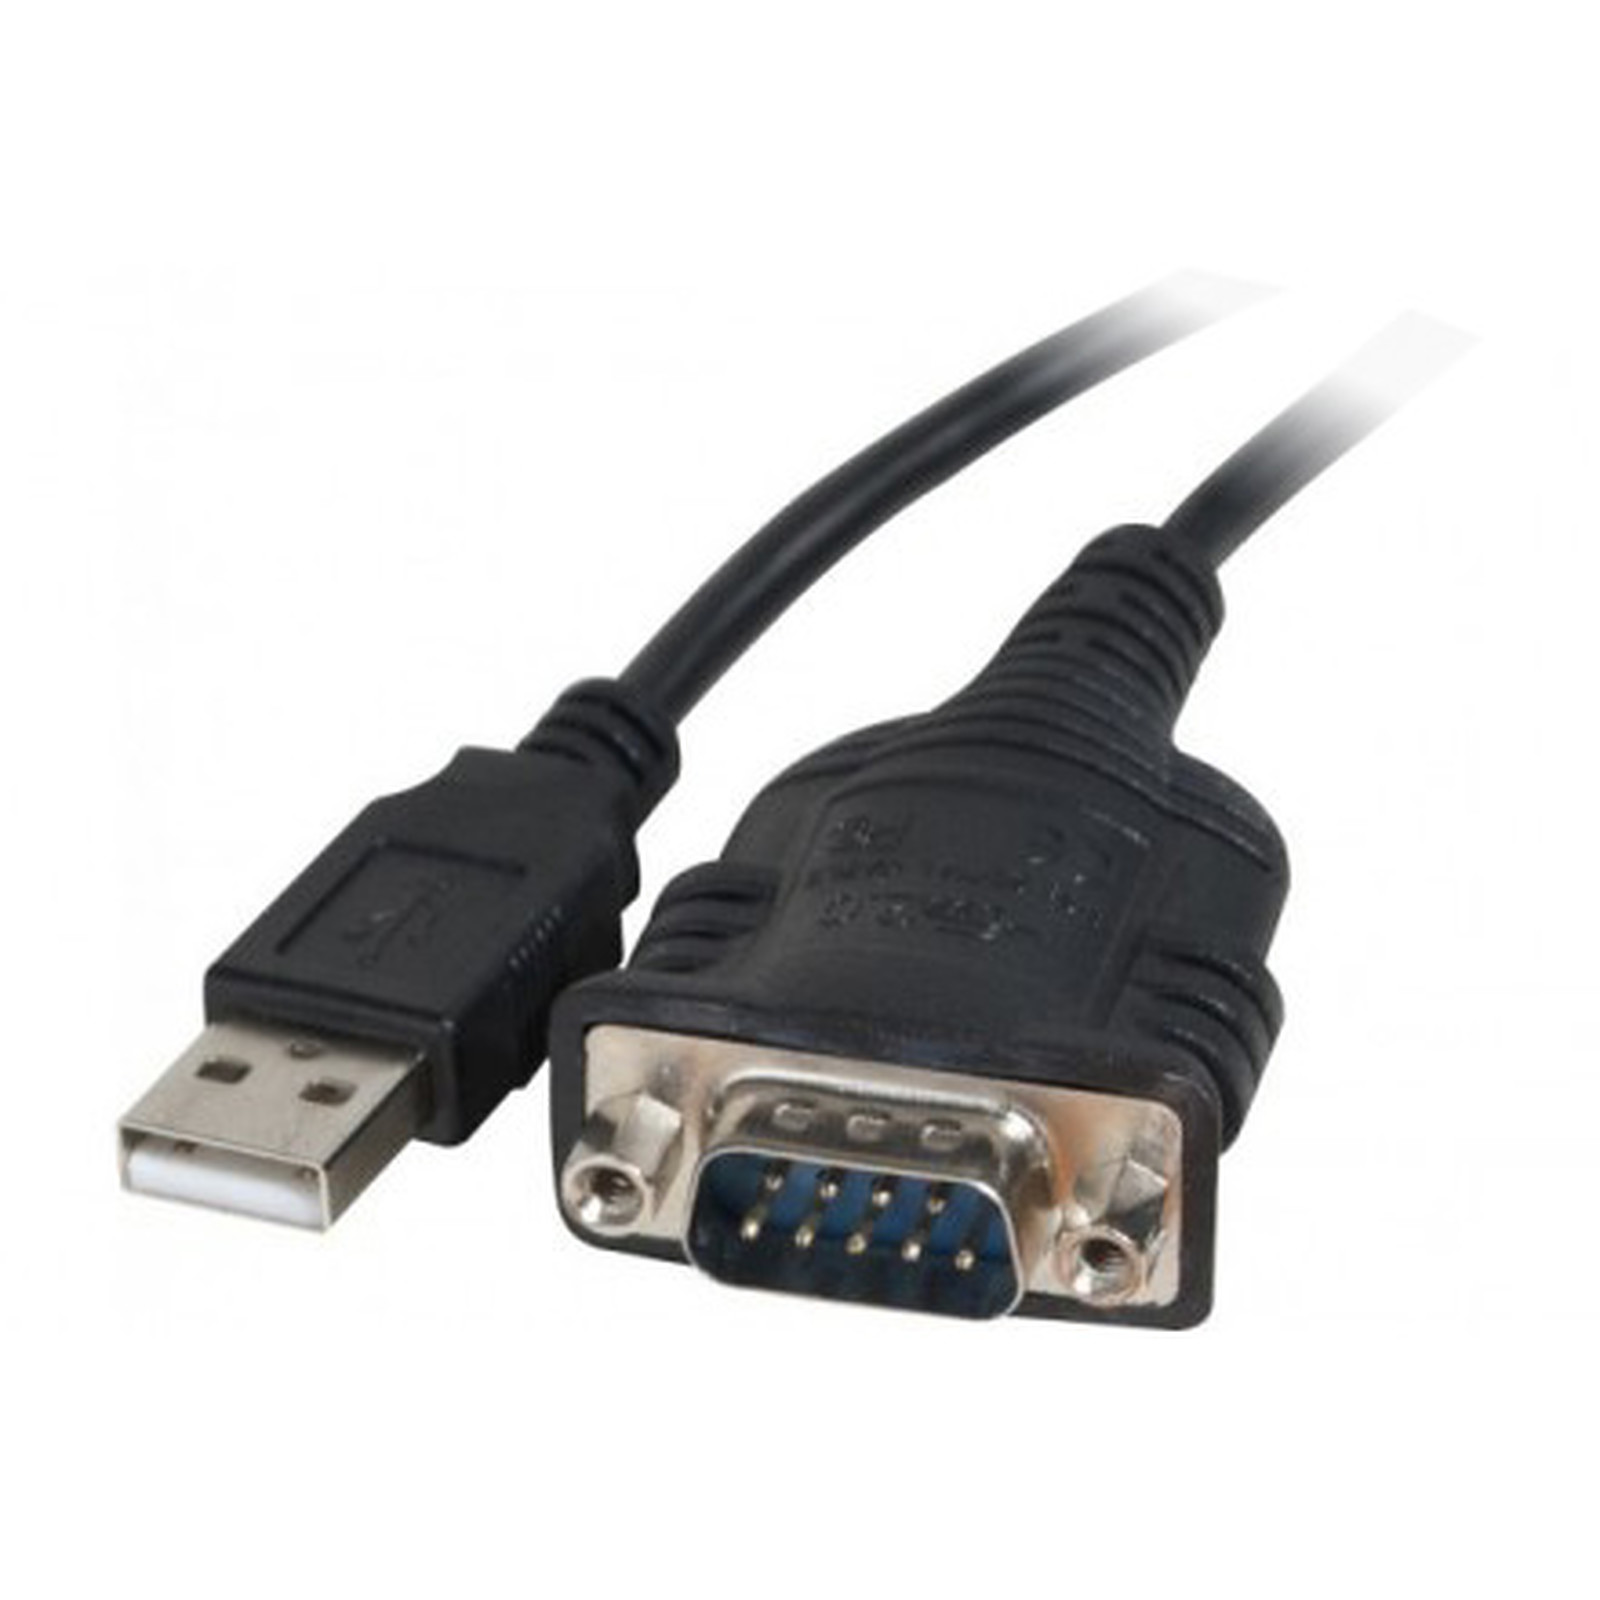 Adaptateur USB pour peripherique serie (DB9) - USB Generique